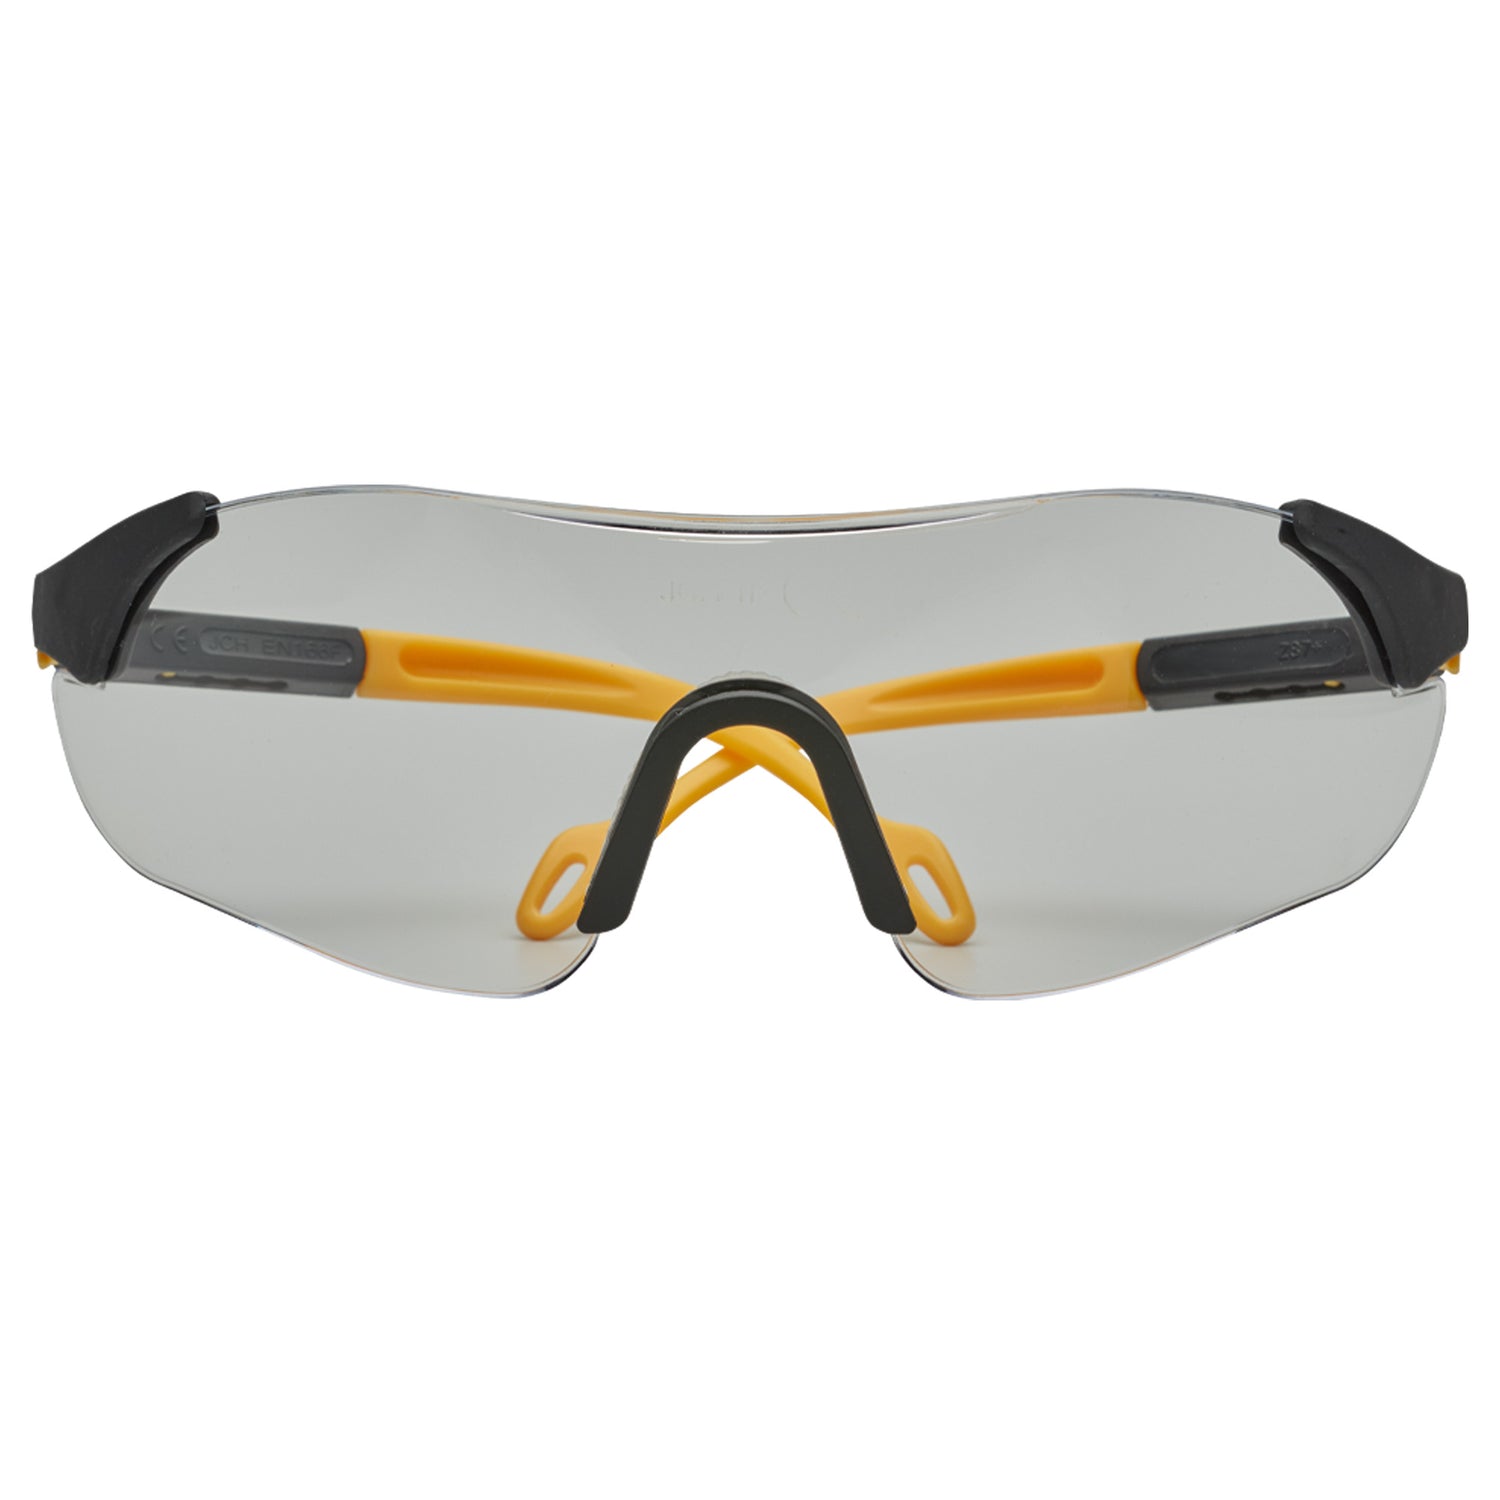 Schutzbrille Safety Comfort klar